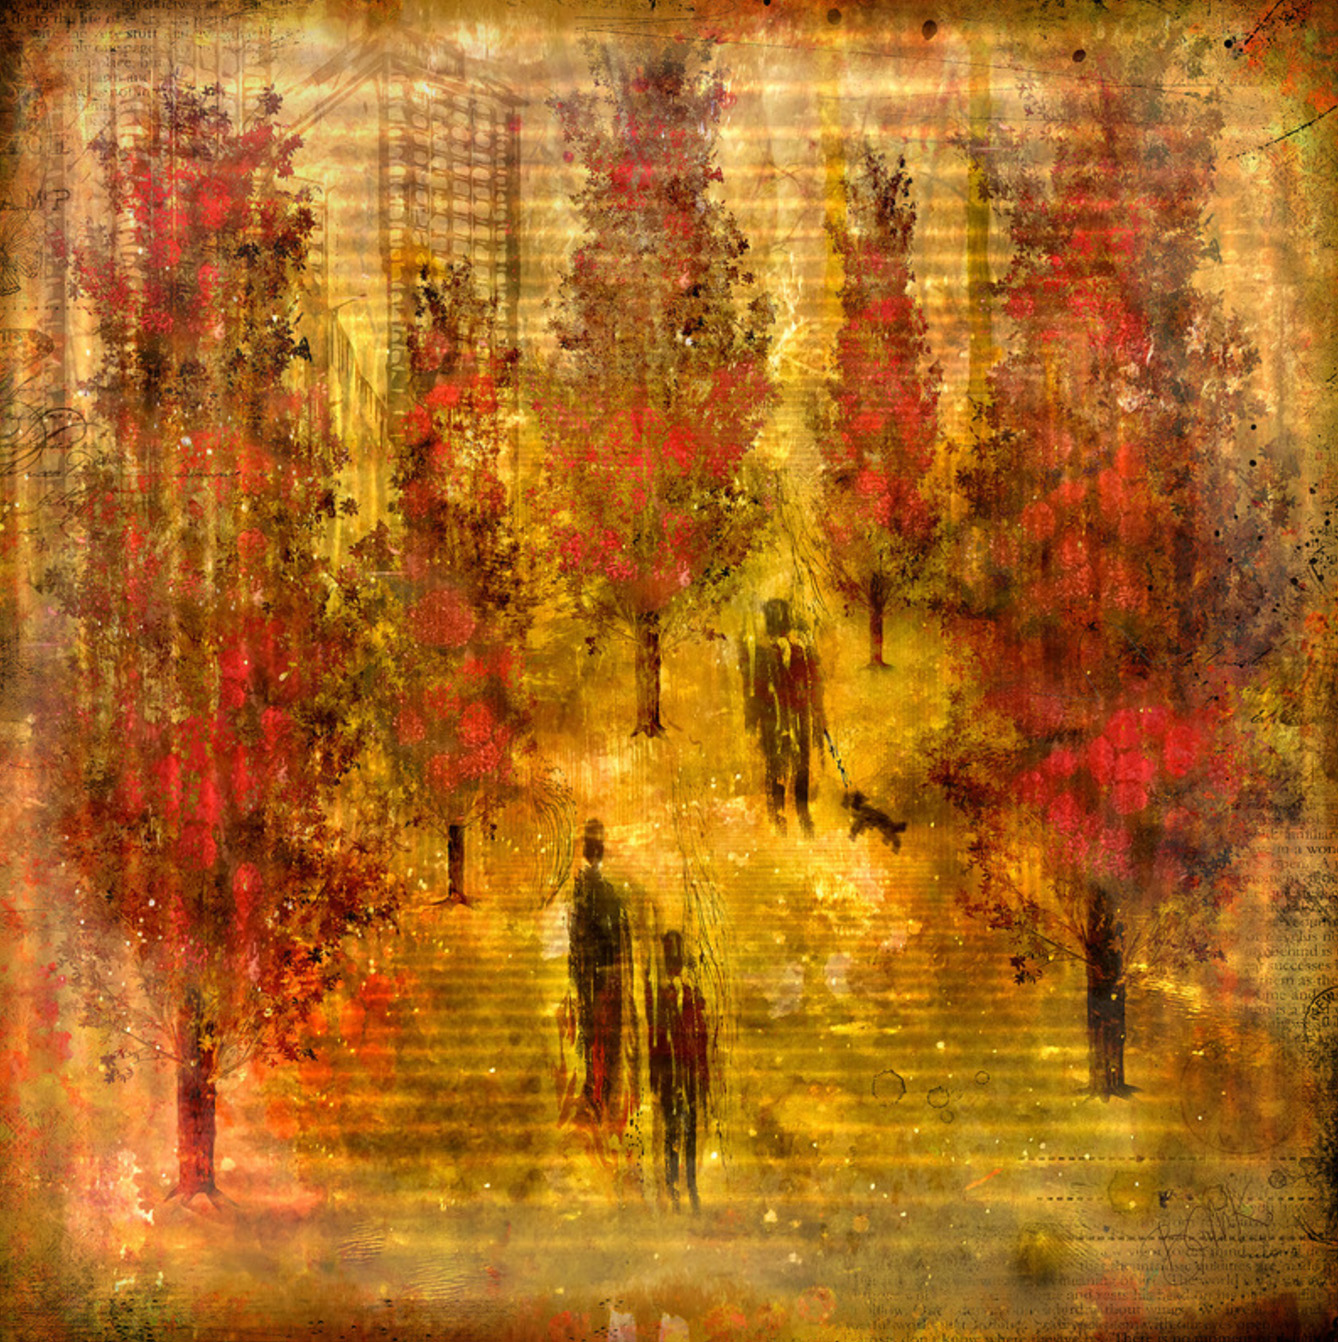 Digital art prints by Barbara Mierau Klein: Walk Among the Red Trees